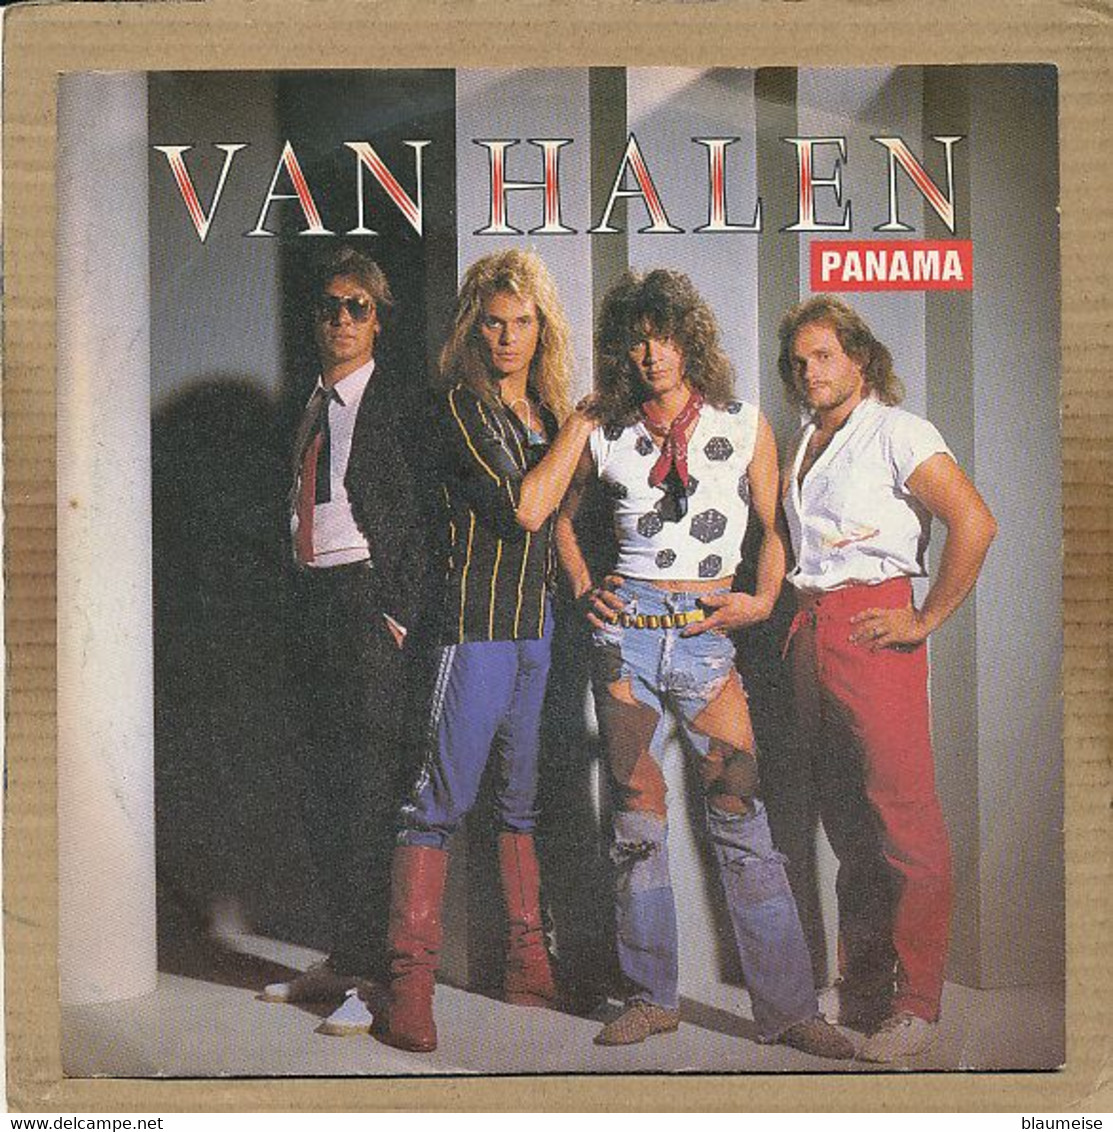 7" Single, Van Halen - Panama - Rock